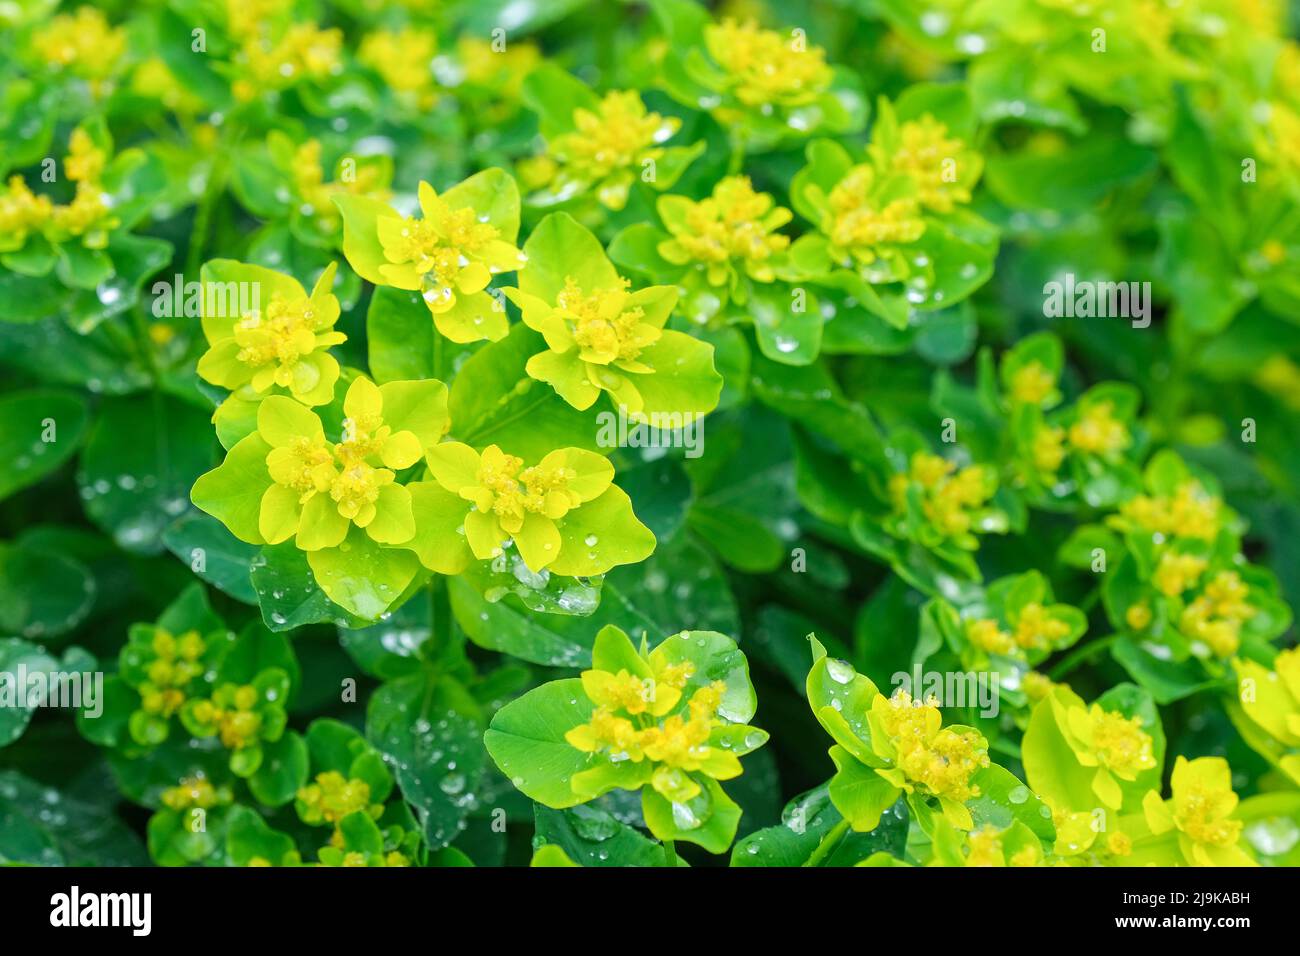 Euforbia policroma, Espurgado de cojín, Espurgado de cromo. Flores brillantes de color amarillo dorado, sobre un cojín de hojas de color verde claro. Foto de stock